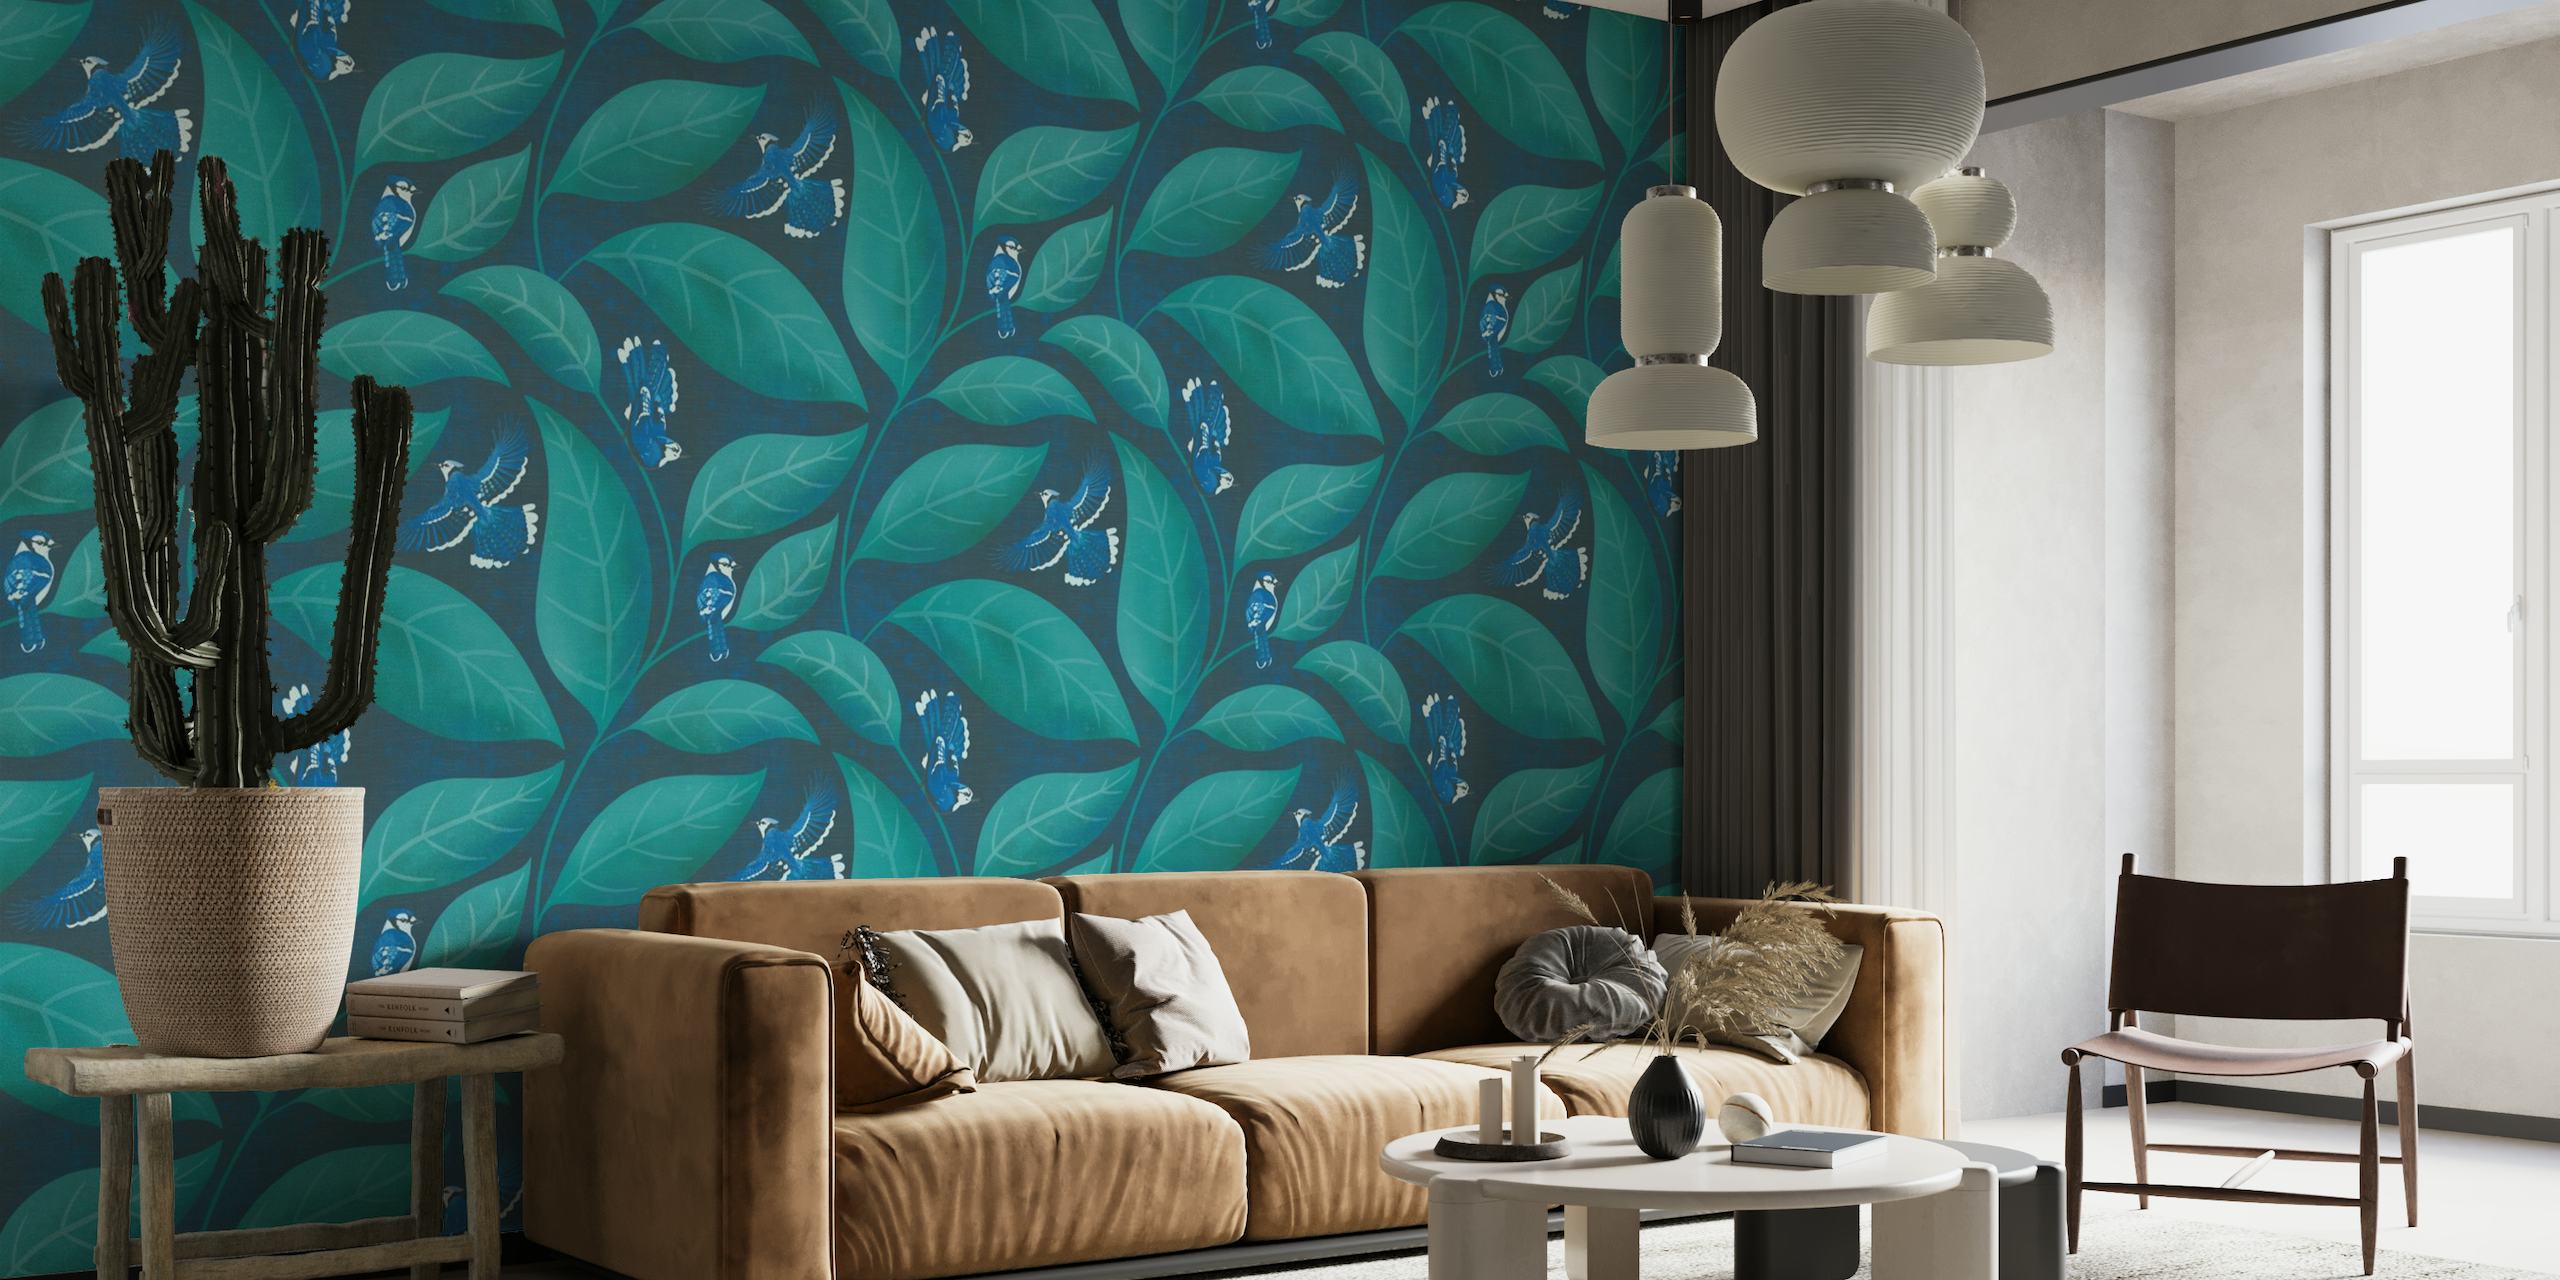 Patrones de pájaros Blue Jay sobre un fondo de hojas verdes en el mural de pared de colores Pantone Ultra Steady.